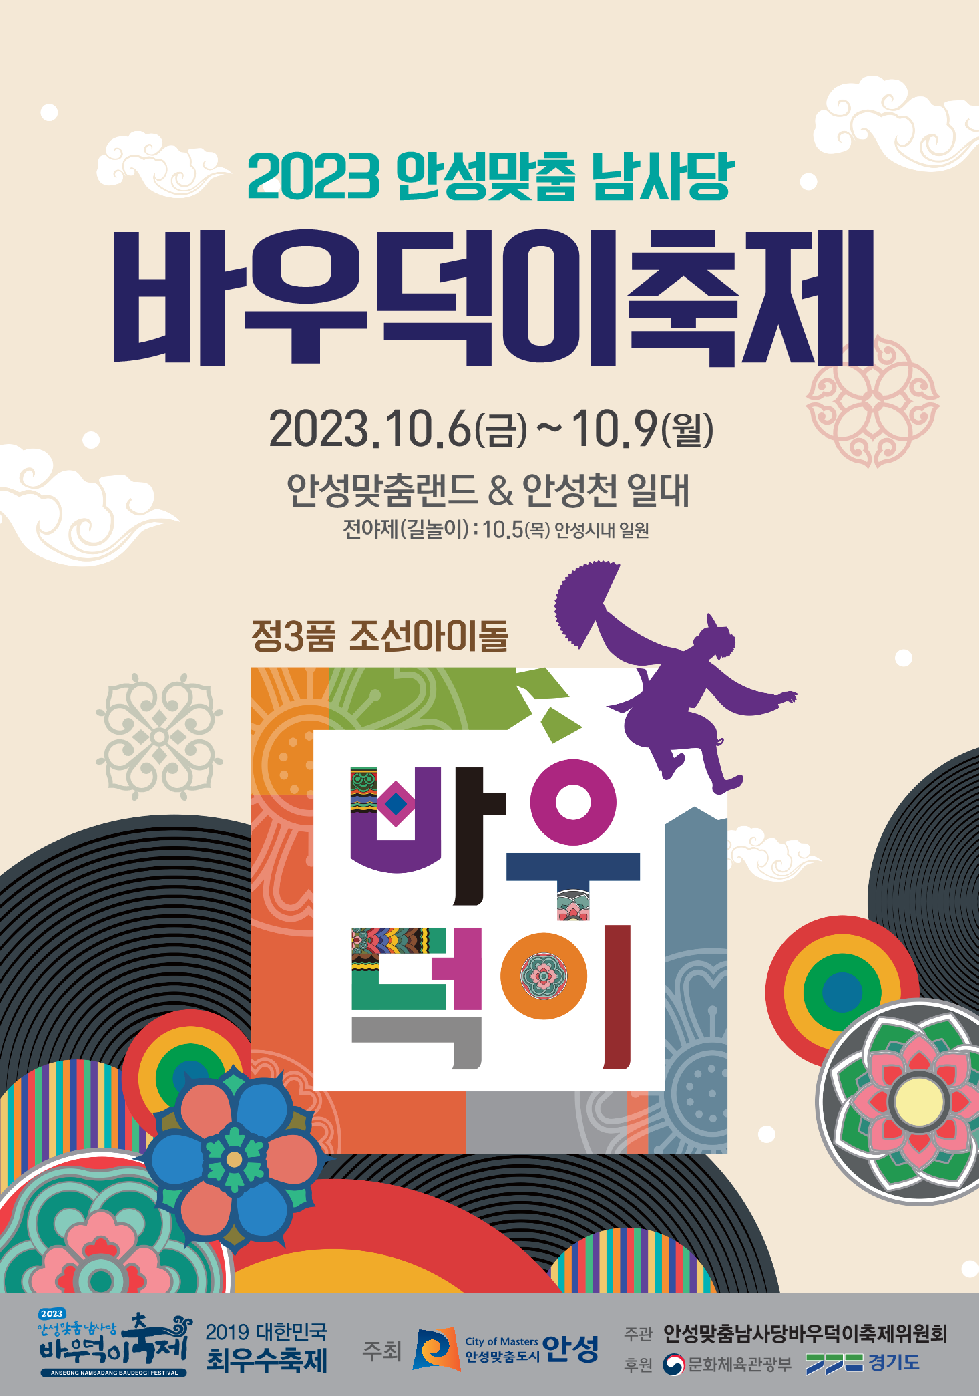 2023 안성맞춤남사당바우덕축제, 무료 셔틀버스 확대